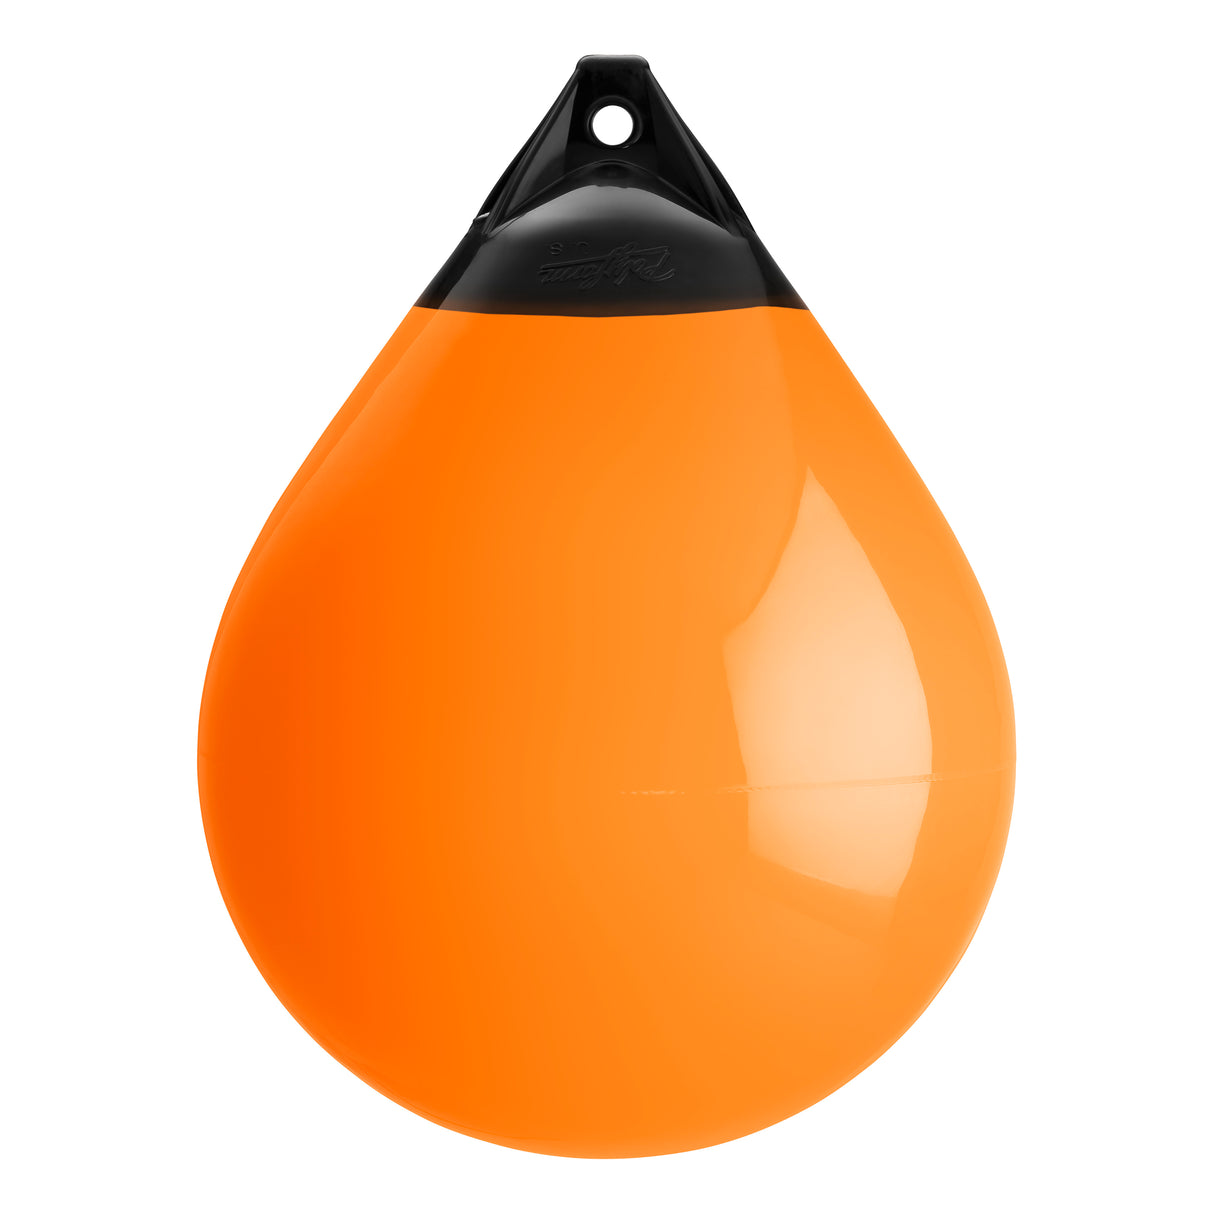 Orange buoy with Black-Top, Polyform A-5